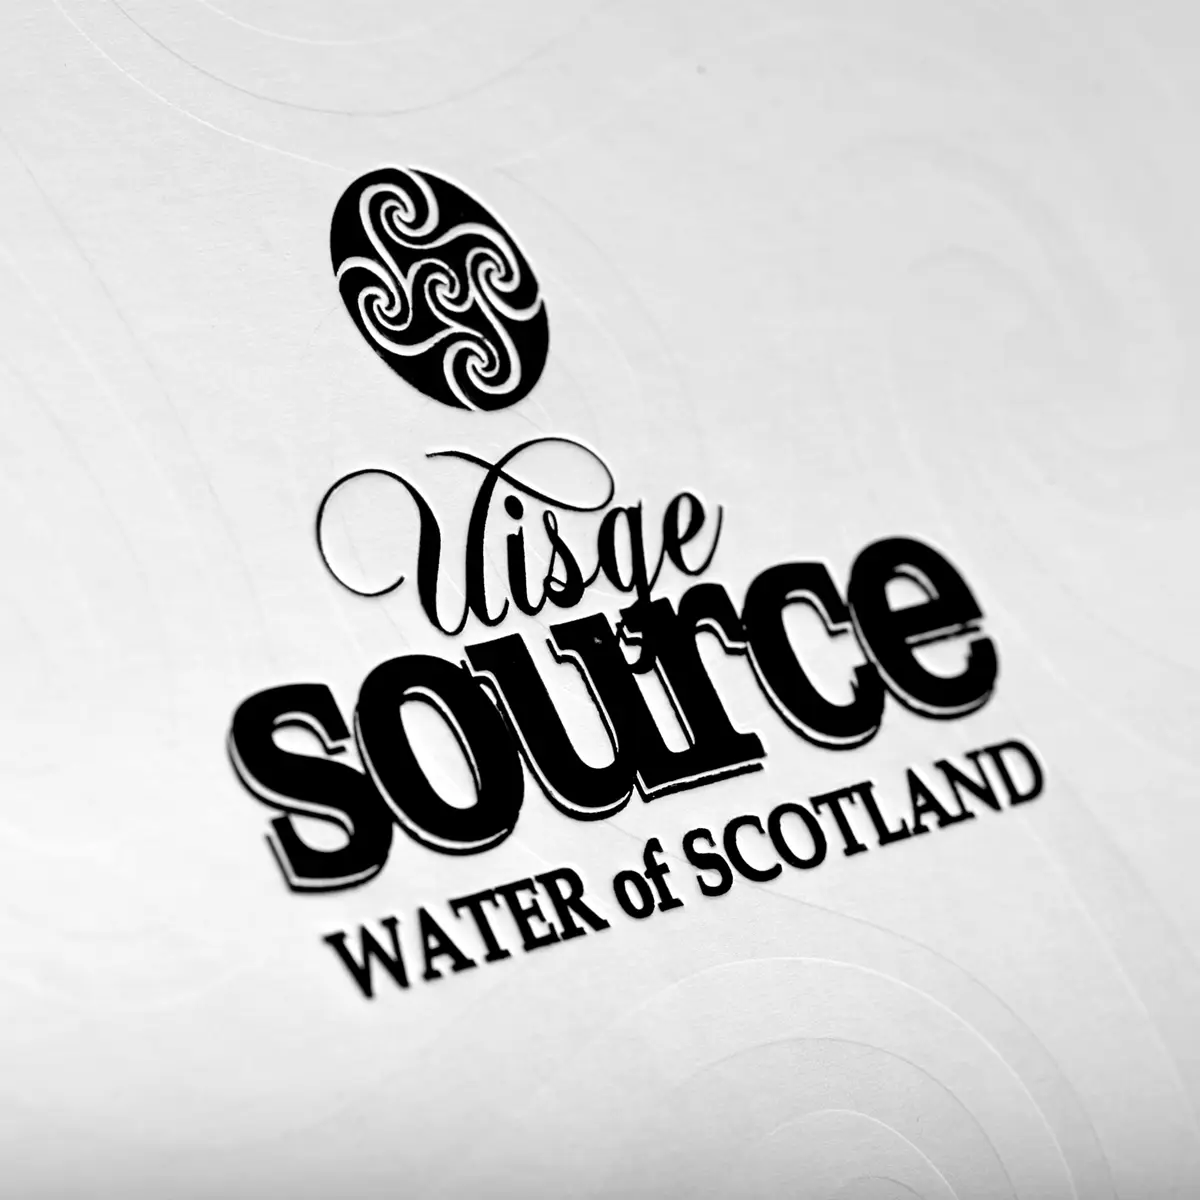 Highland - Uisge Source Whisky Wasser aus Schottland